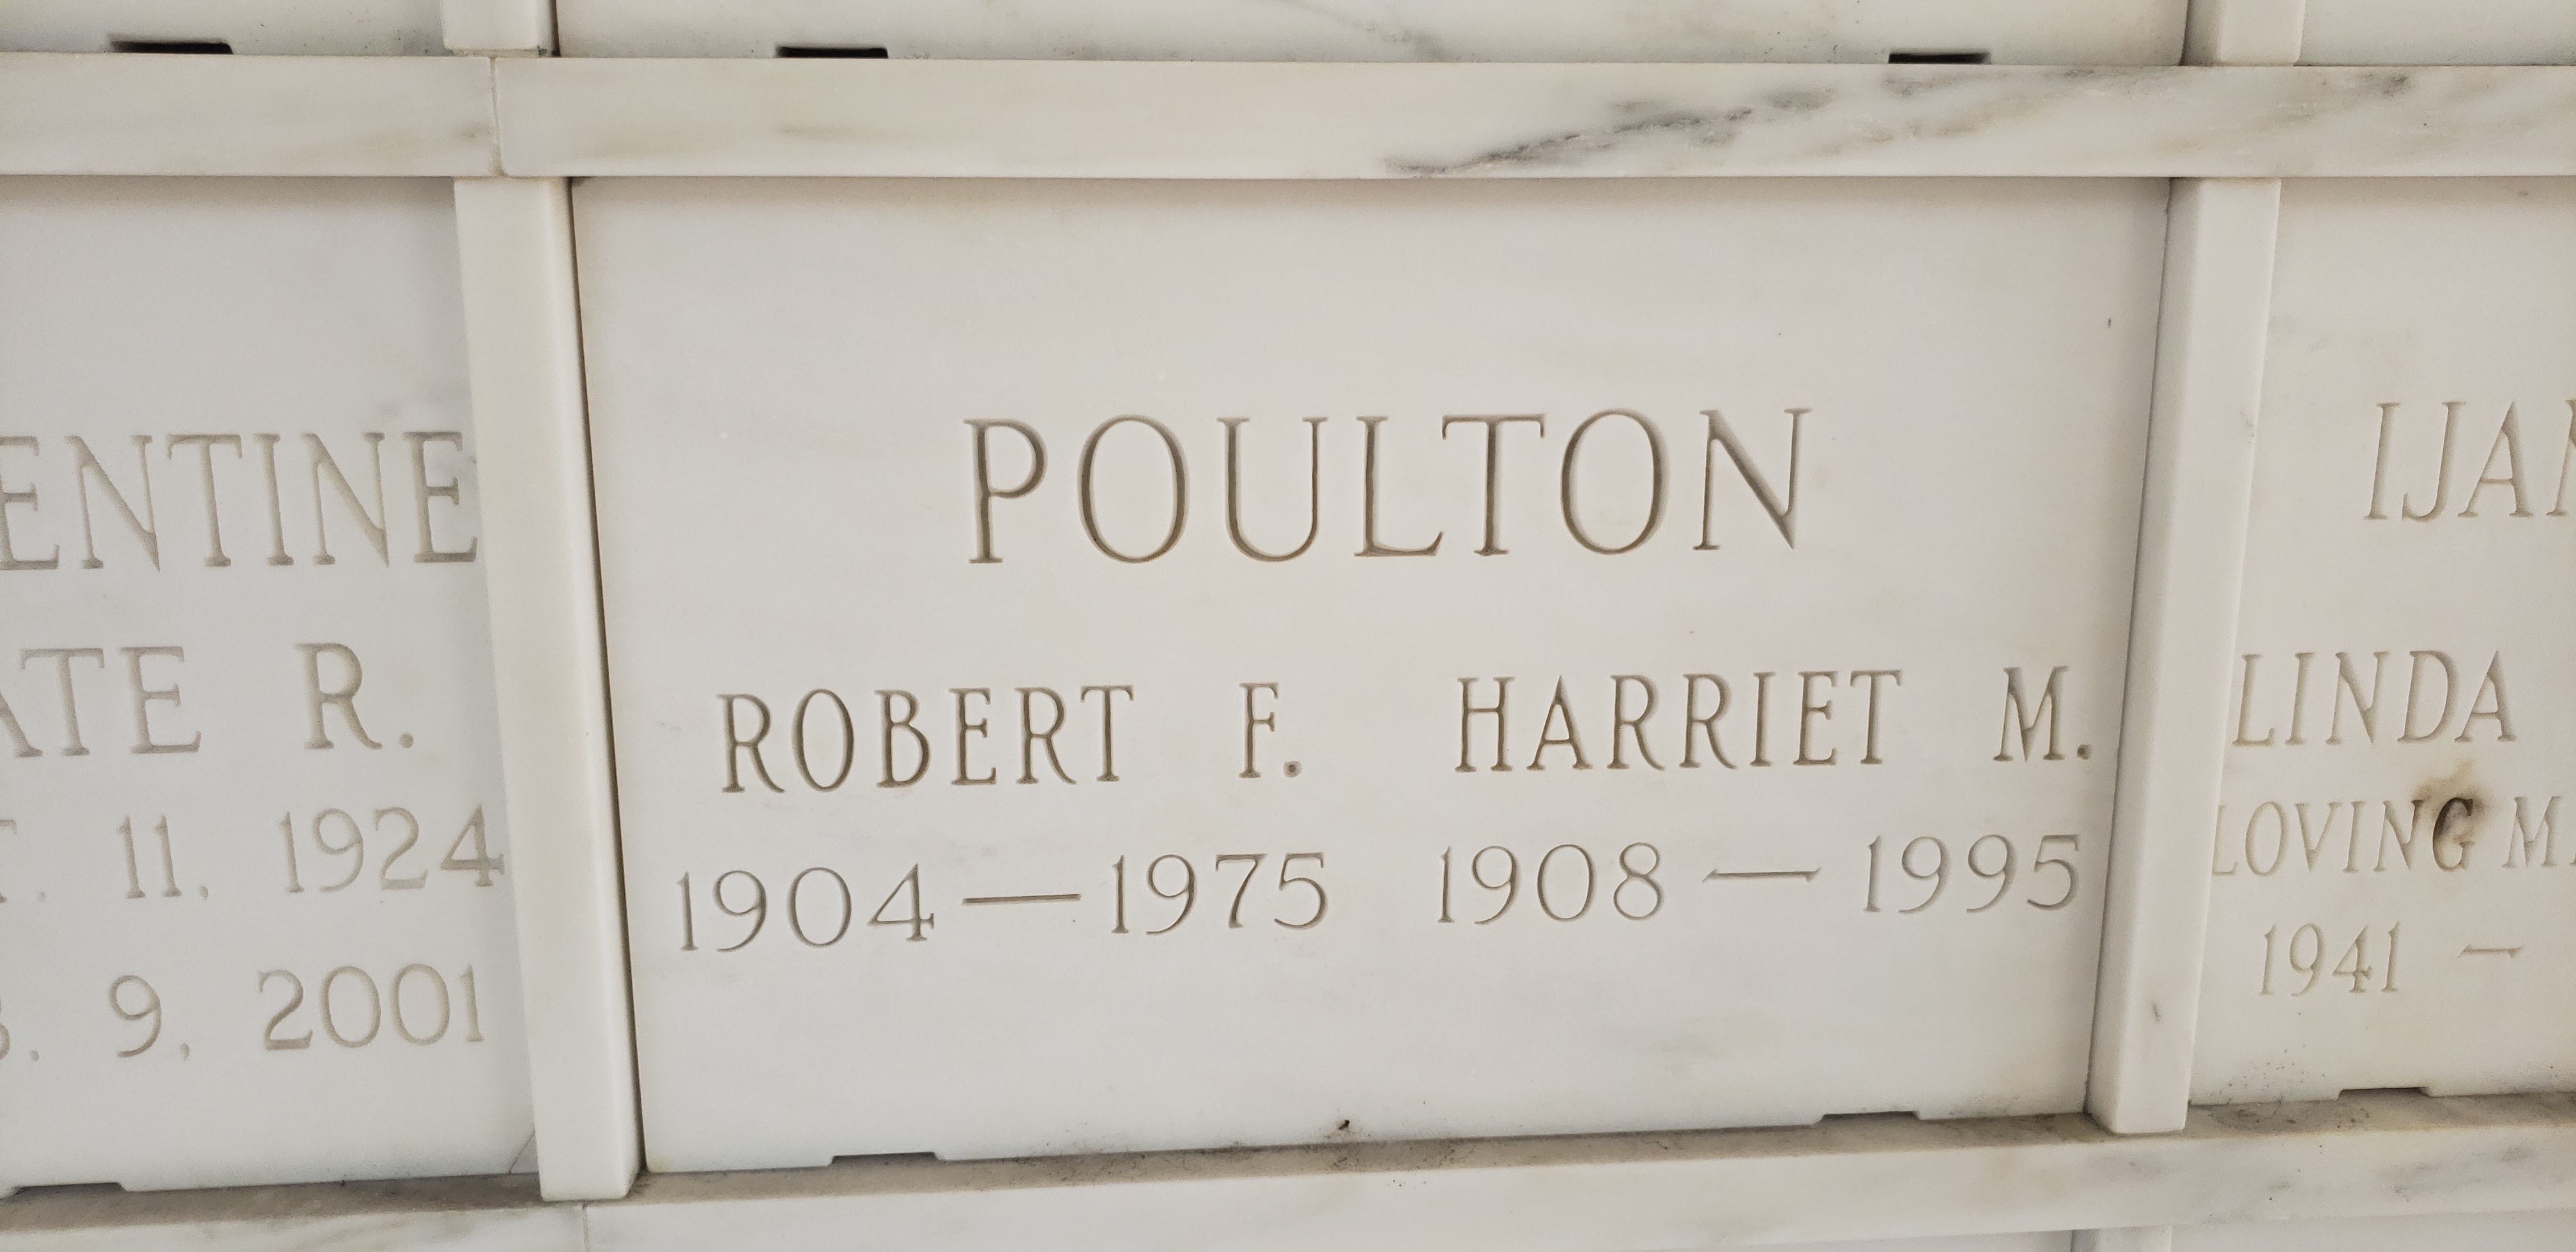 Robert F Poulton